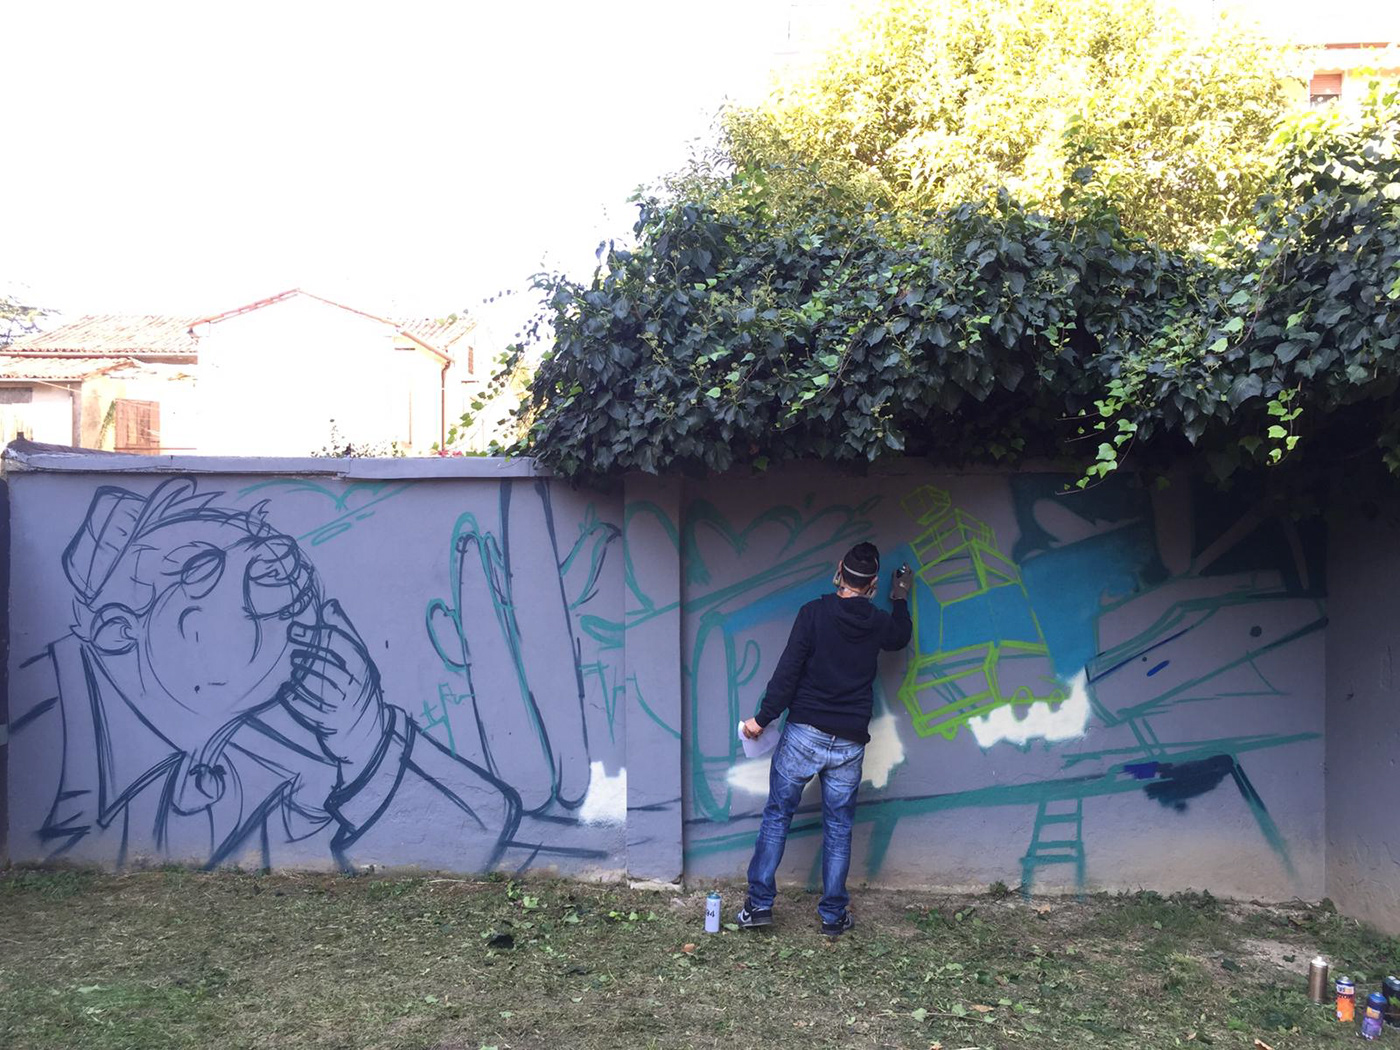 Graffiti spray paint Skaione PADOVA wall Character Street Art  streeart Clash black